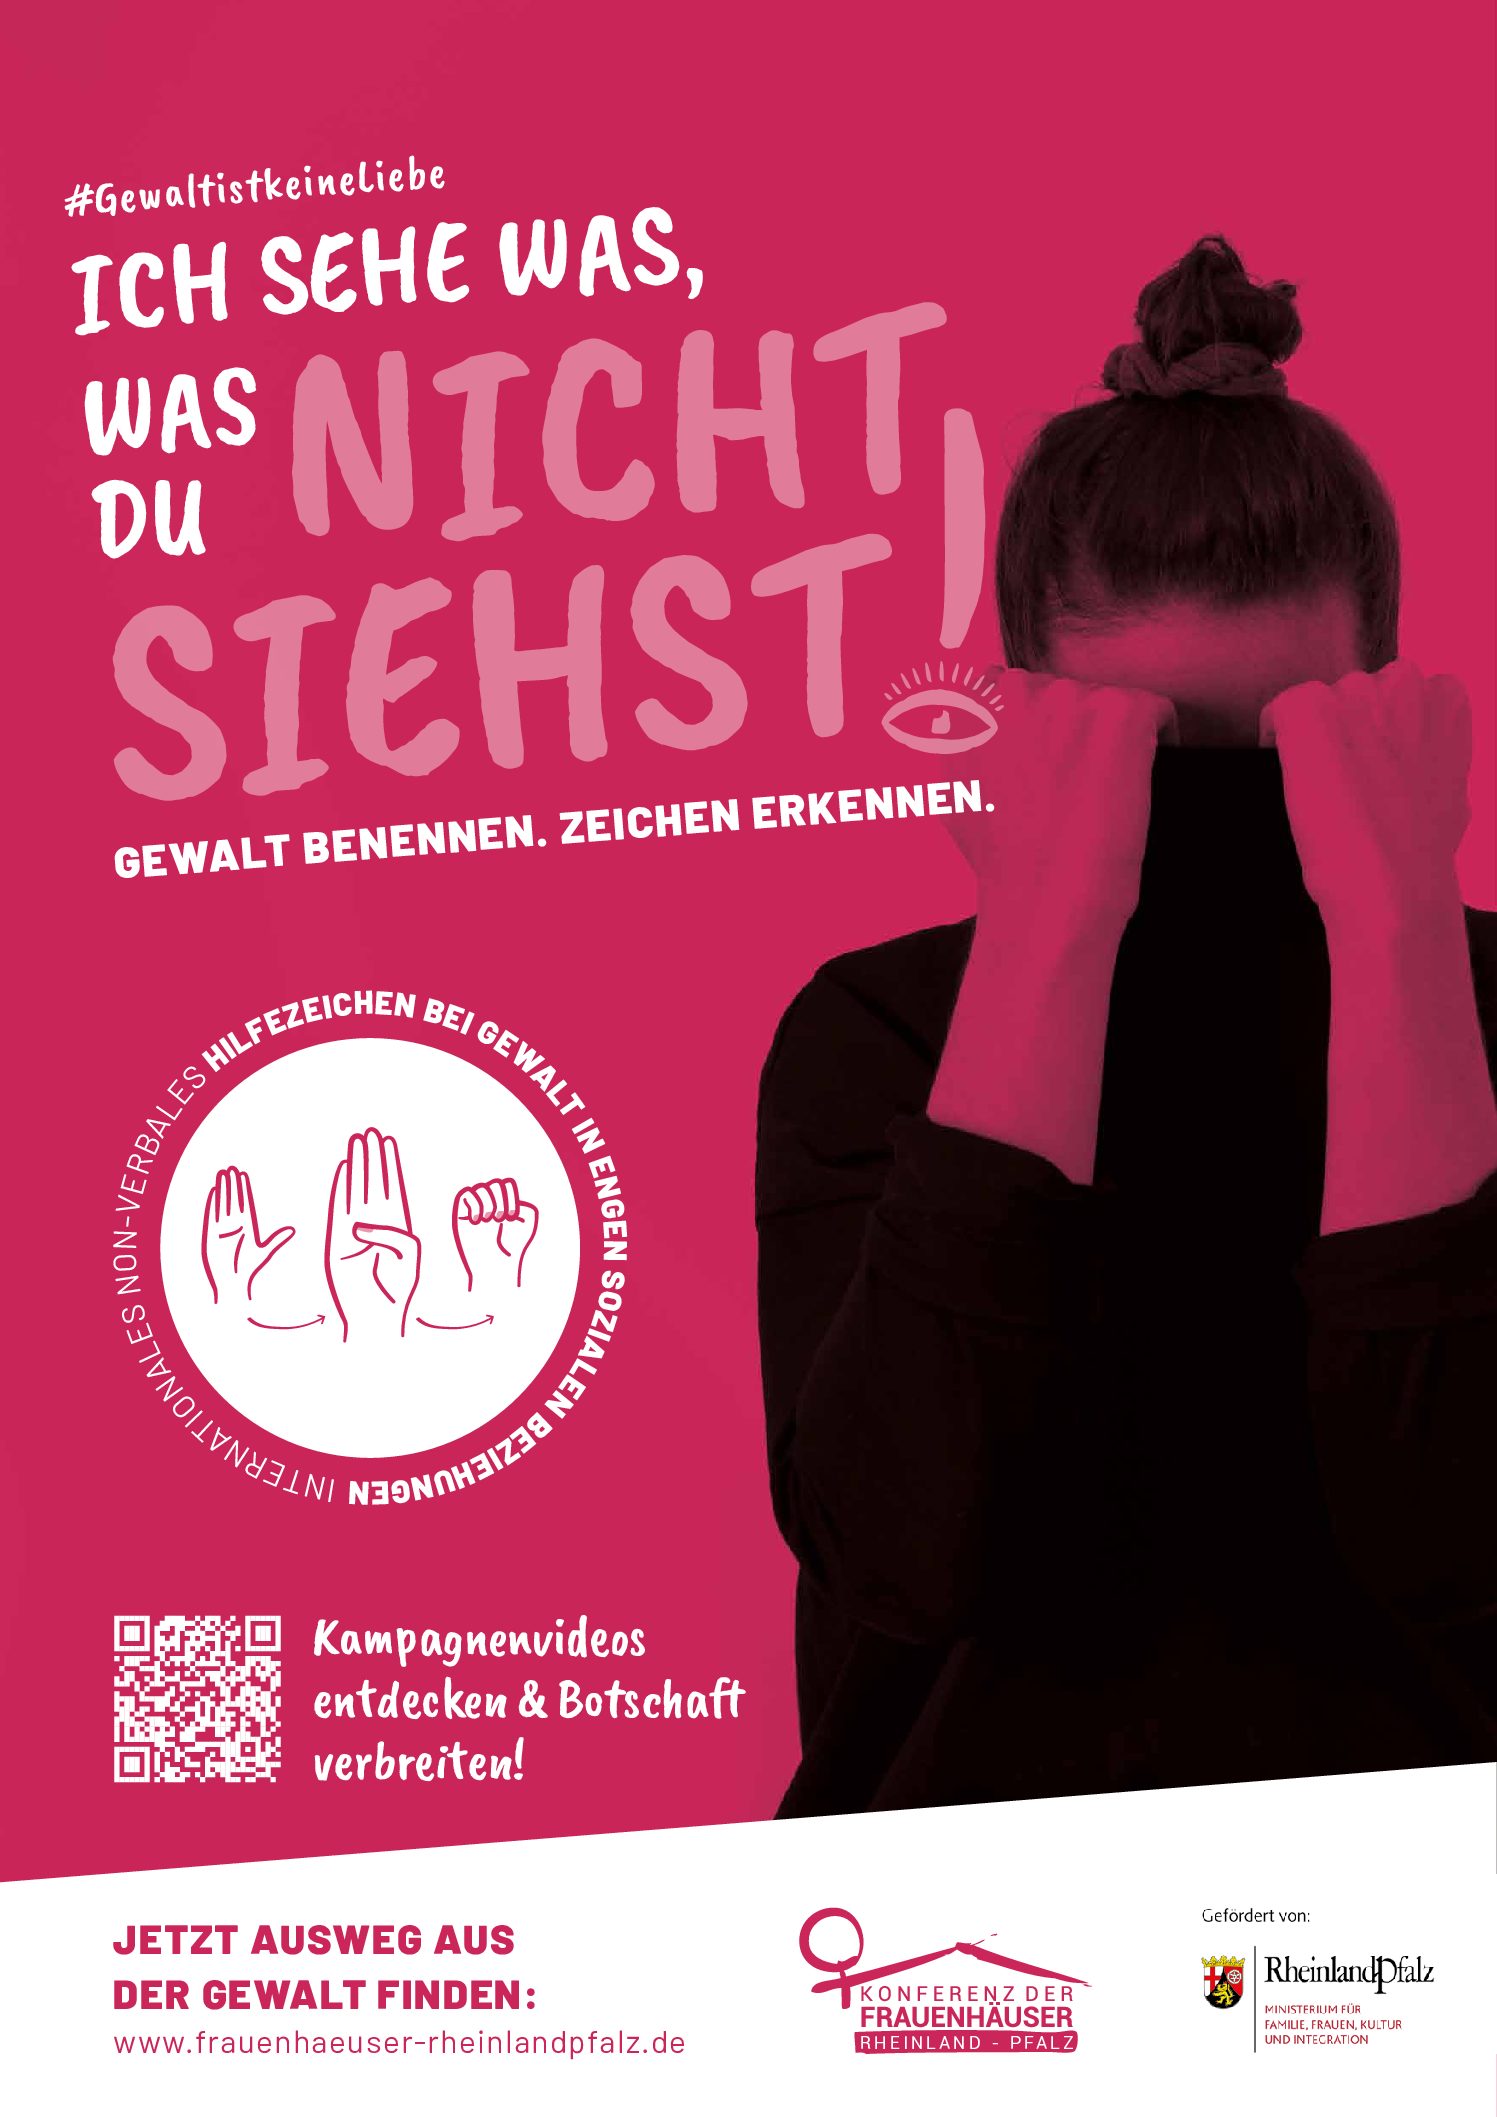 Öffentlichkeitskampagne der Konferenz der Frauenhäuser Rheinland-Pfalz